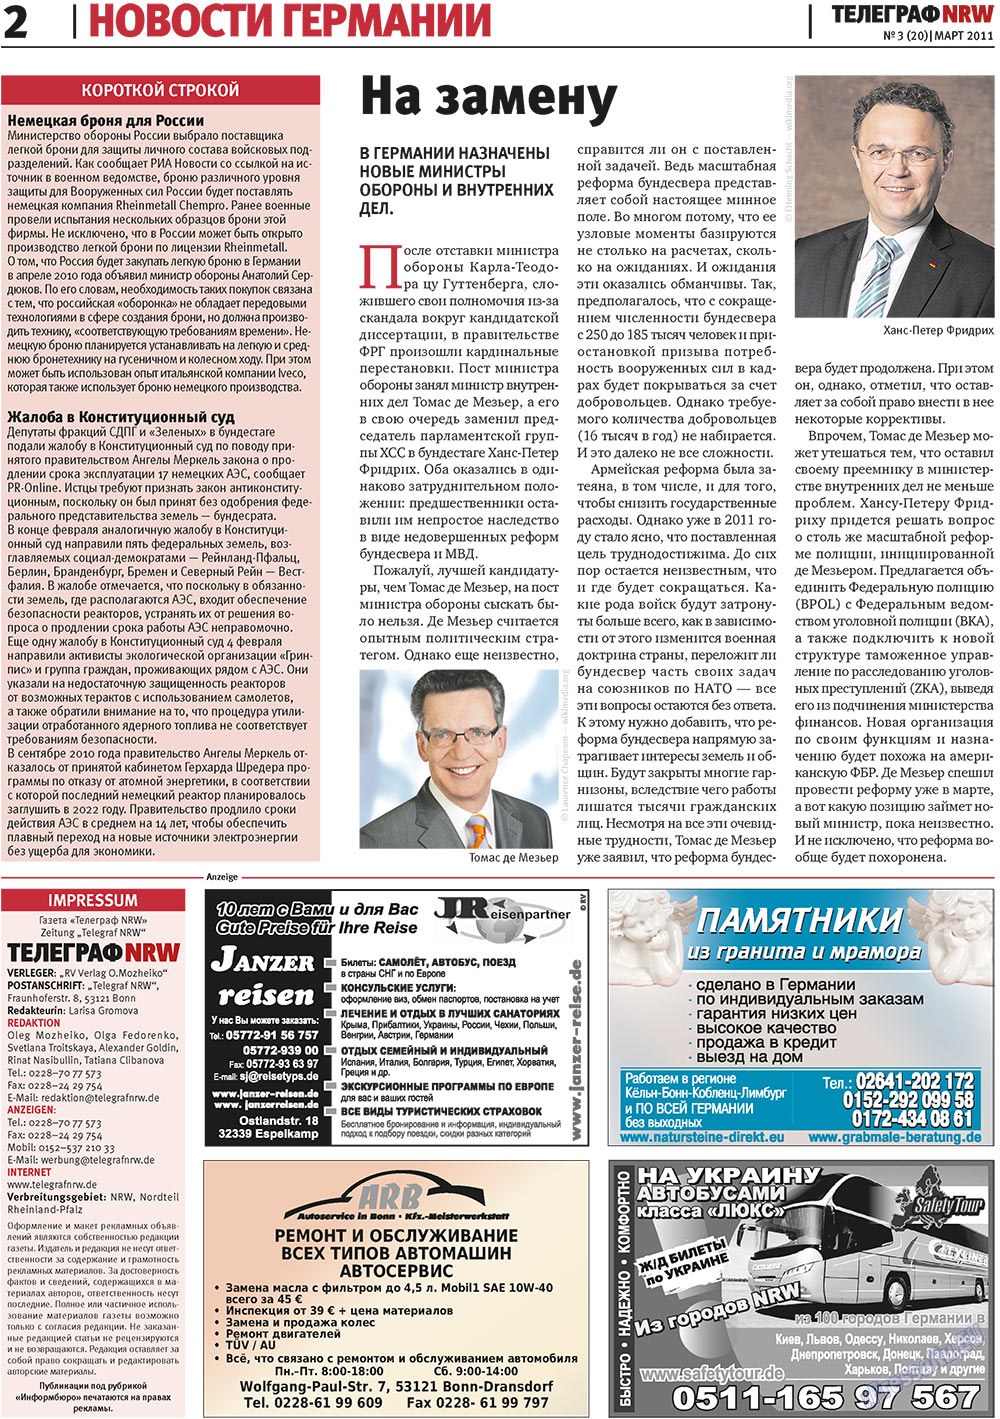 Телеграф NRW (газета). 2011 год, номер 3, стр. 2